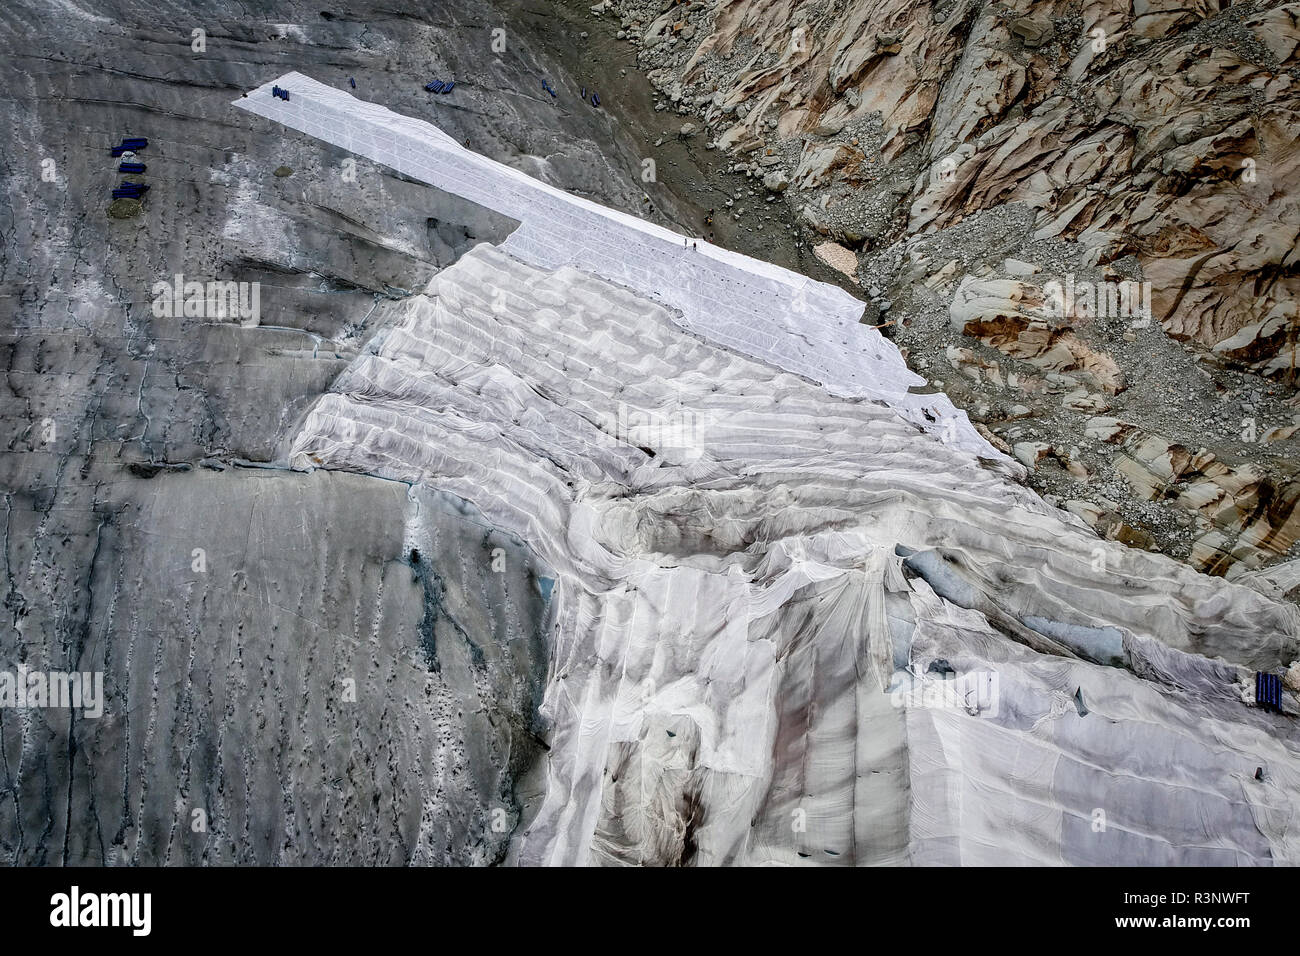 Riesige Laken mit Fleece-Decken bedecken einen Eistunnel an der Mündung des Rhonegletschers in der Schweiz. Nach einem Winter mit Rekordschneemengen war der größte Teil davon verschwunden, als dieser Imae am 14. Juli 2018 aufgenommen wurde, um das dunklere Eis freizulegen. Während Schnee ein brillanter Reflektor der Sonnenenergie ist, absorbiert das dunklere Eis stattdessen die Energie und beschleunigt so das Schmelzen des Gletschers. Die Farbe und Dunkelheit des Gletschereises variiert weltweit, je nach Verschmutzungsbildung, Alter des Eises, vom Eis aufgepflückten Partikeln und Mikroorganismen im Eis. Das Gletschereis ist jedoch selten wh Stockfoto